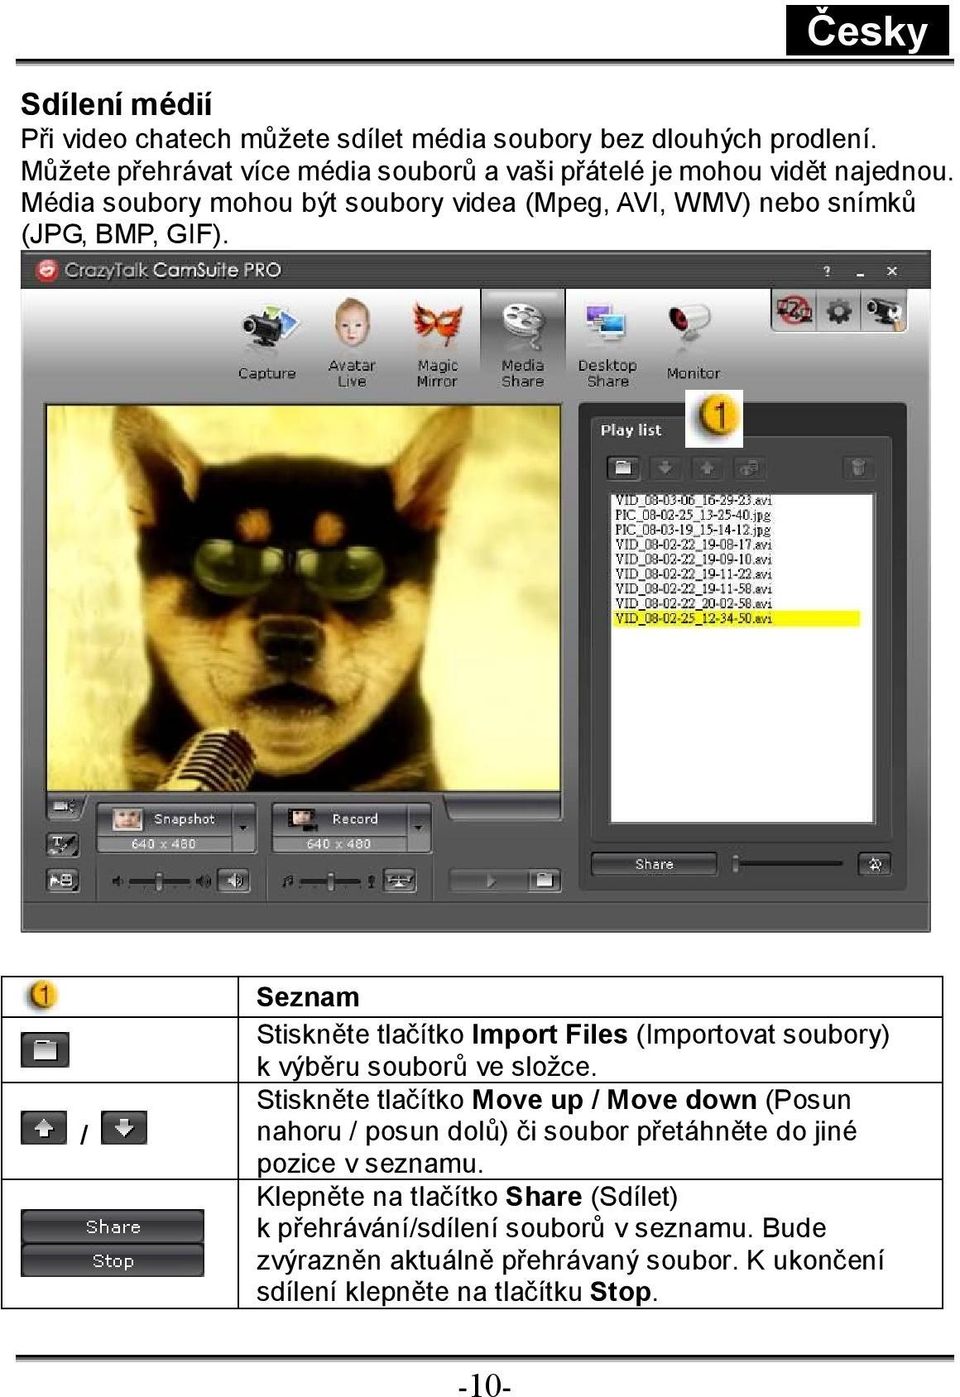 Média soubory mohou být soubory videa (Mpeg, AVI, WMV) nebo snímků (JPG, BMP, GIF).